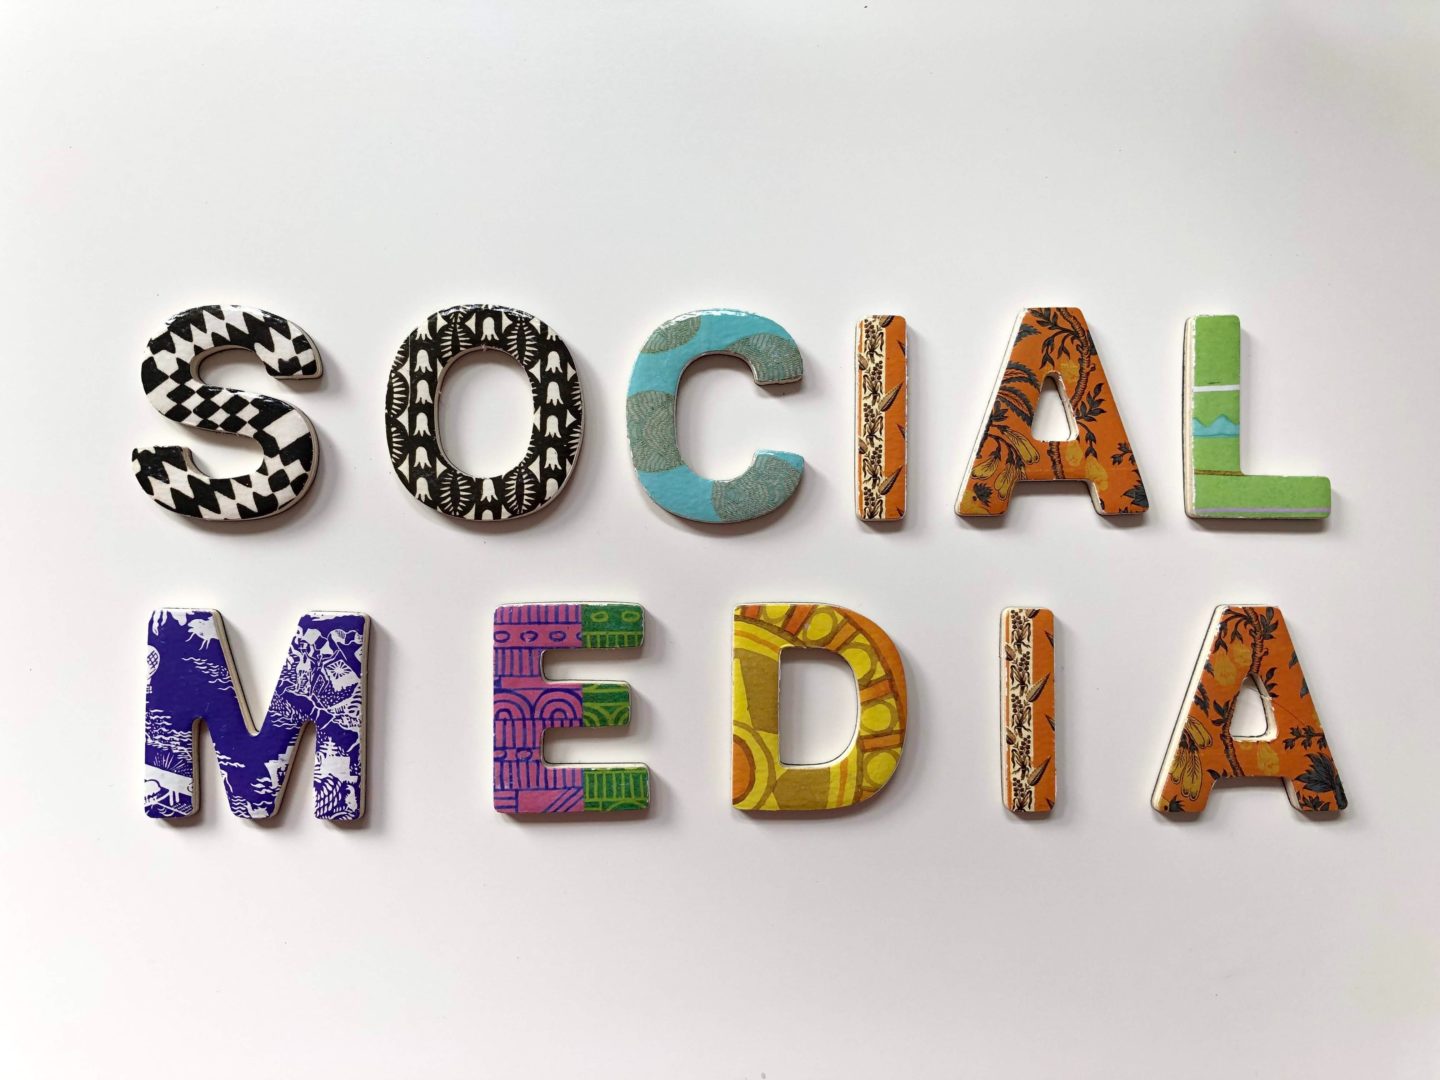 Social media marketing skills